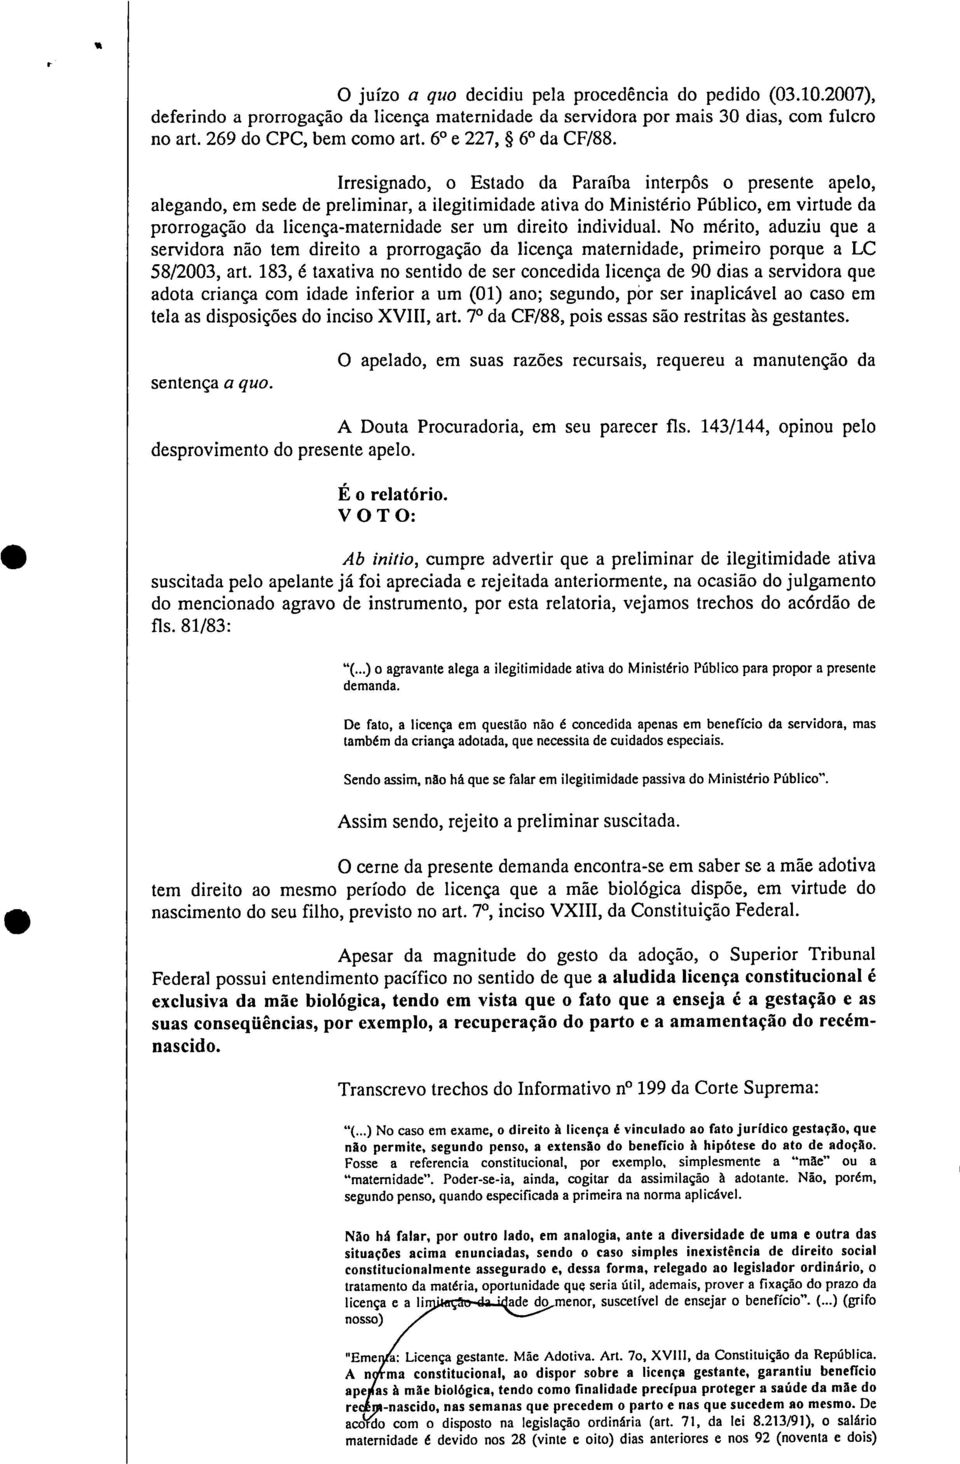 Irresignado, o Estado da Paraíba interpôs o presente apelo, alegando, em sede de preliminar, a ilegitimidade ativa do Ministério Público, em virtude da prorrogação da licença-maternidade ser um